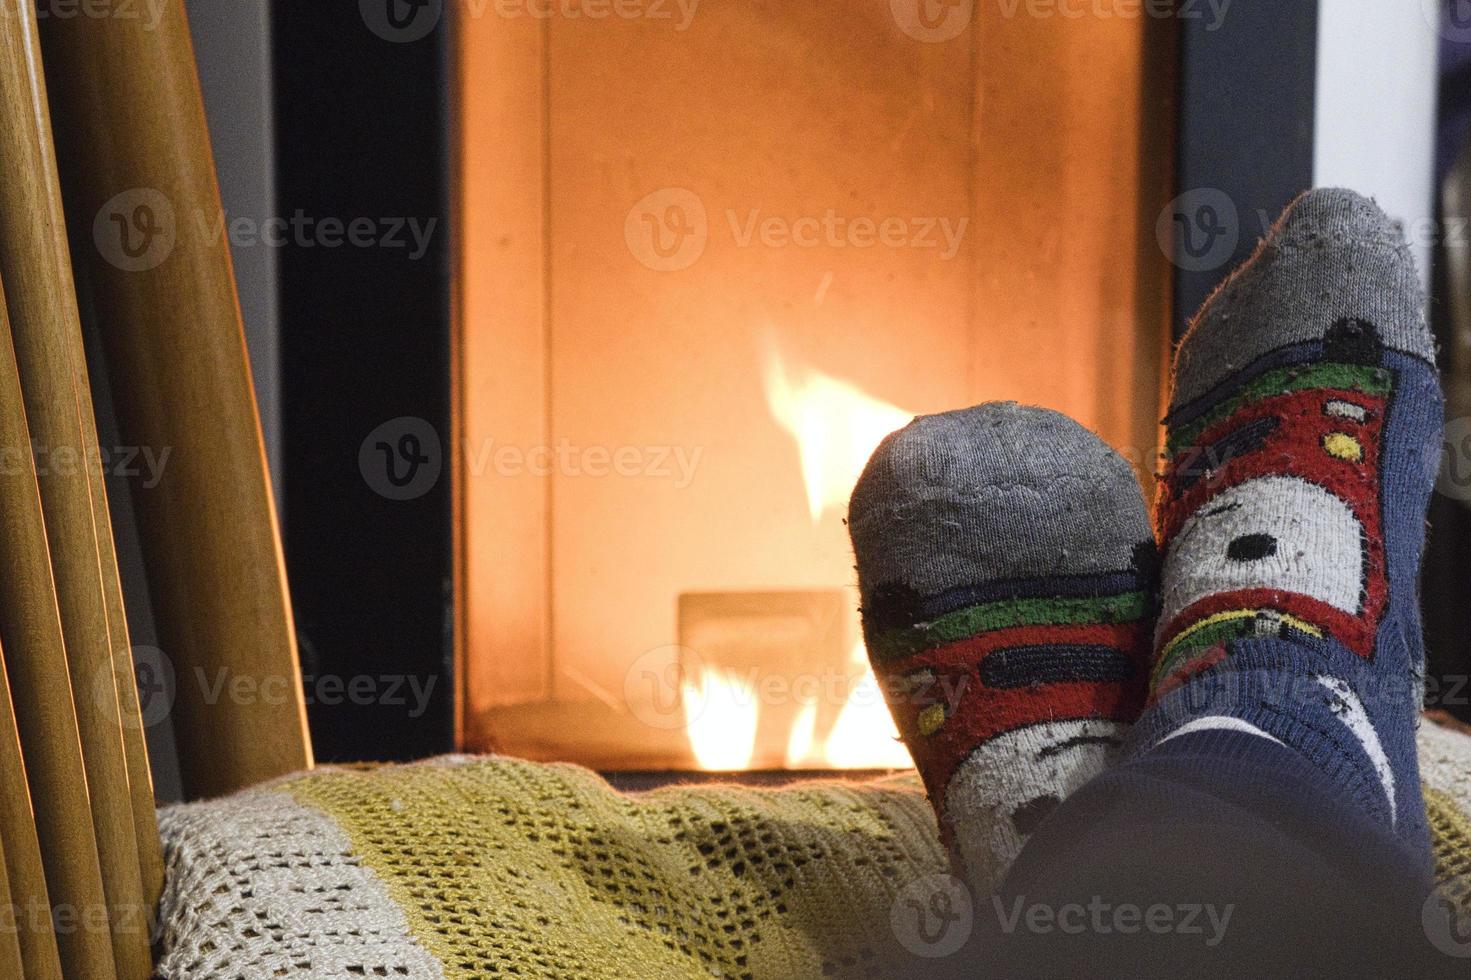 pies calentándose en una silla frente a una chimenea encendida durante una fría noche de invierno en diciembre foto